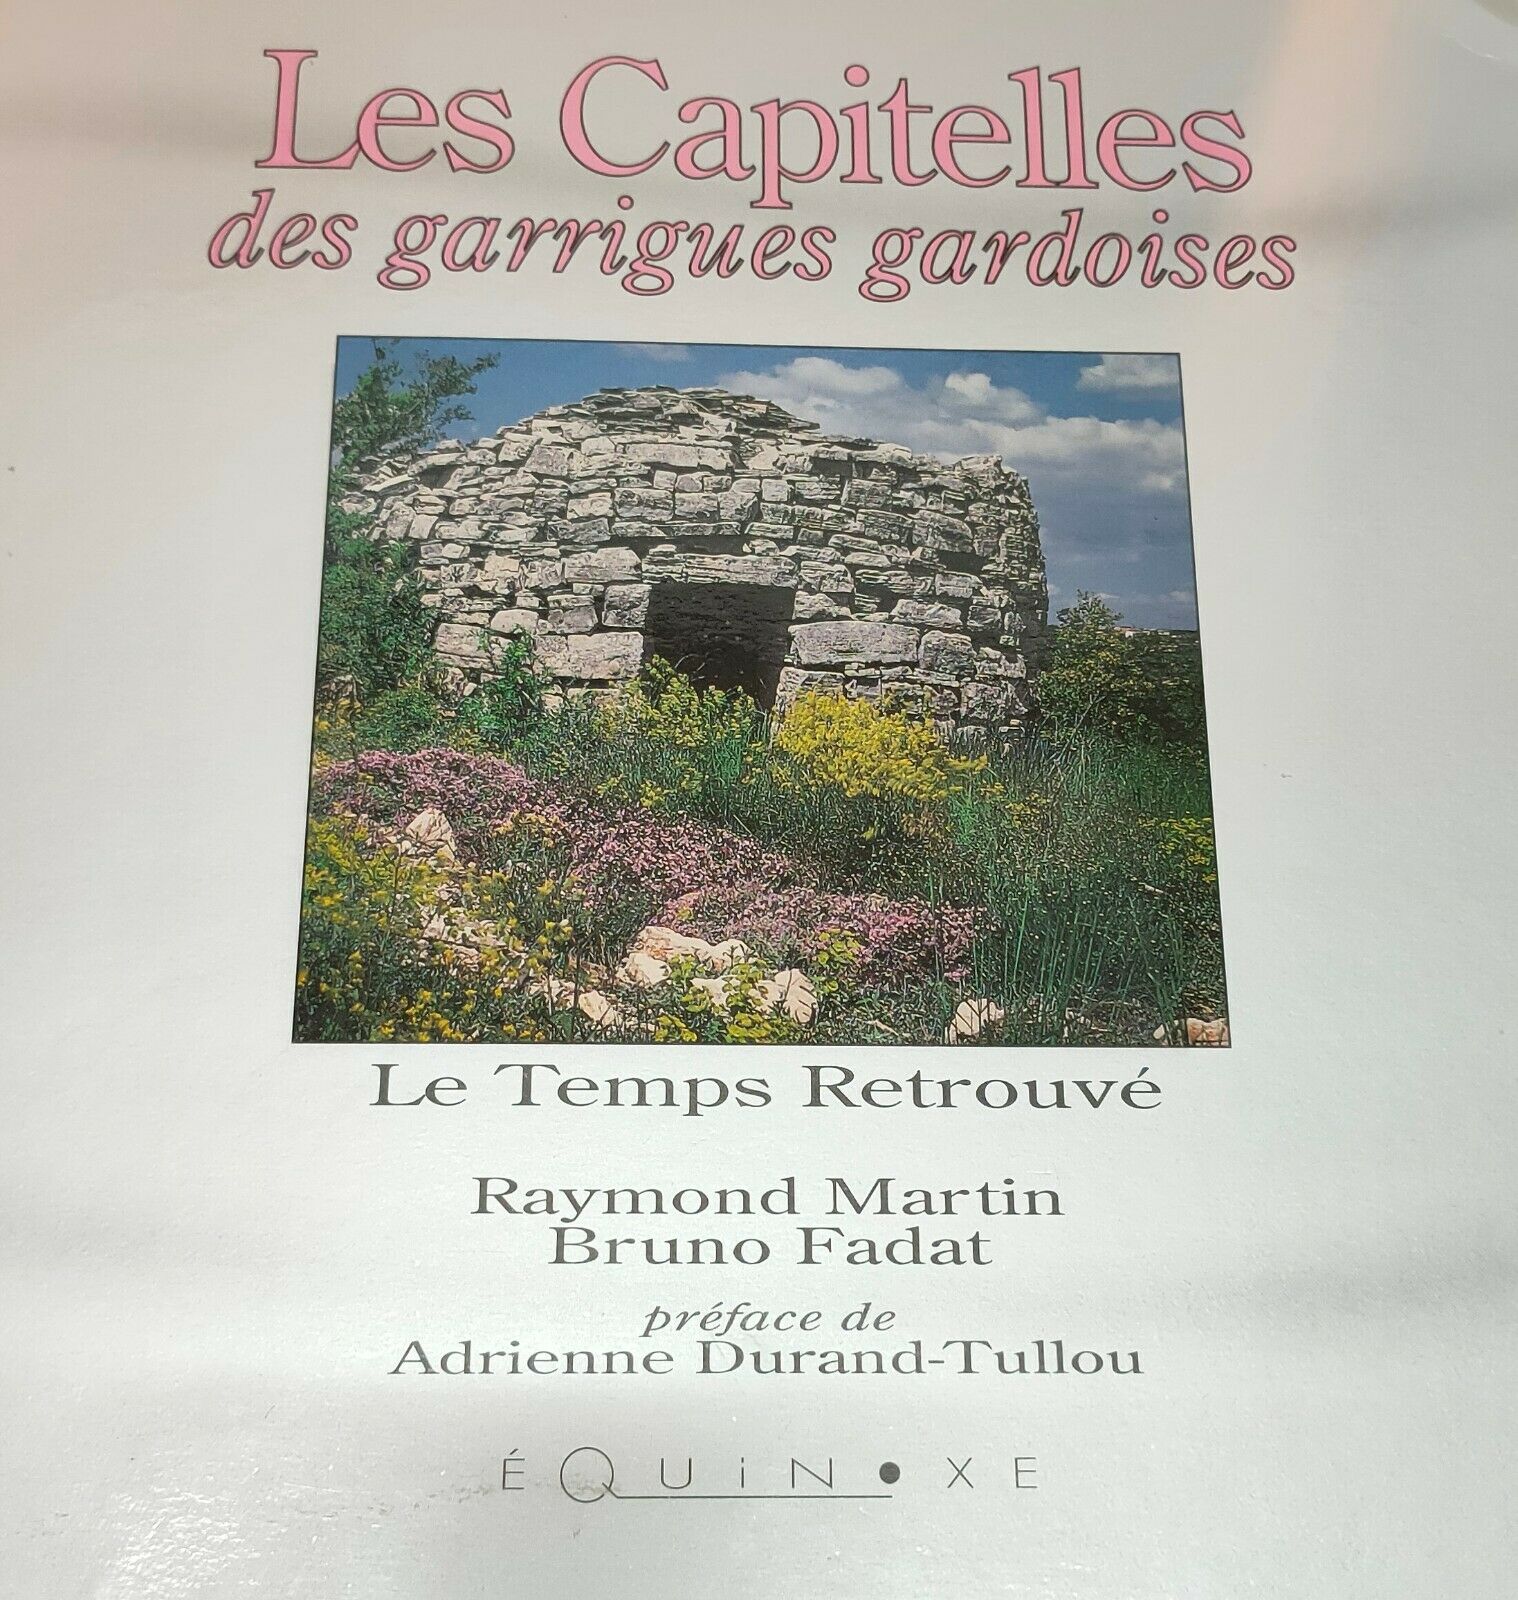 Featured image for “Les Capitelles des garrigues gardoises”